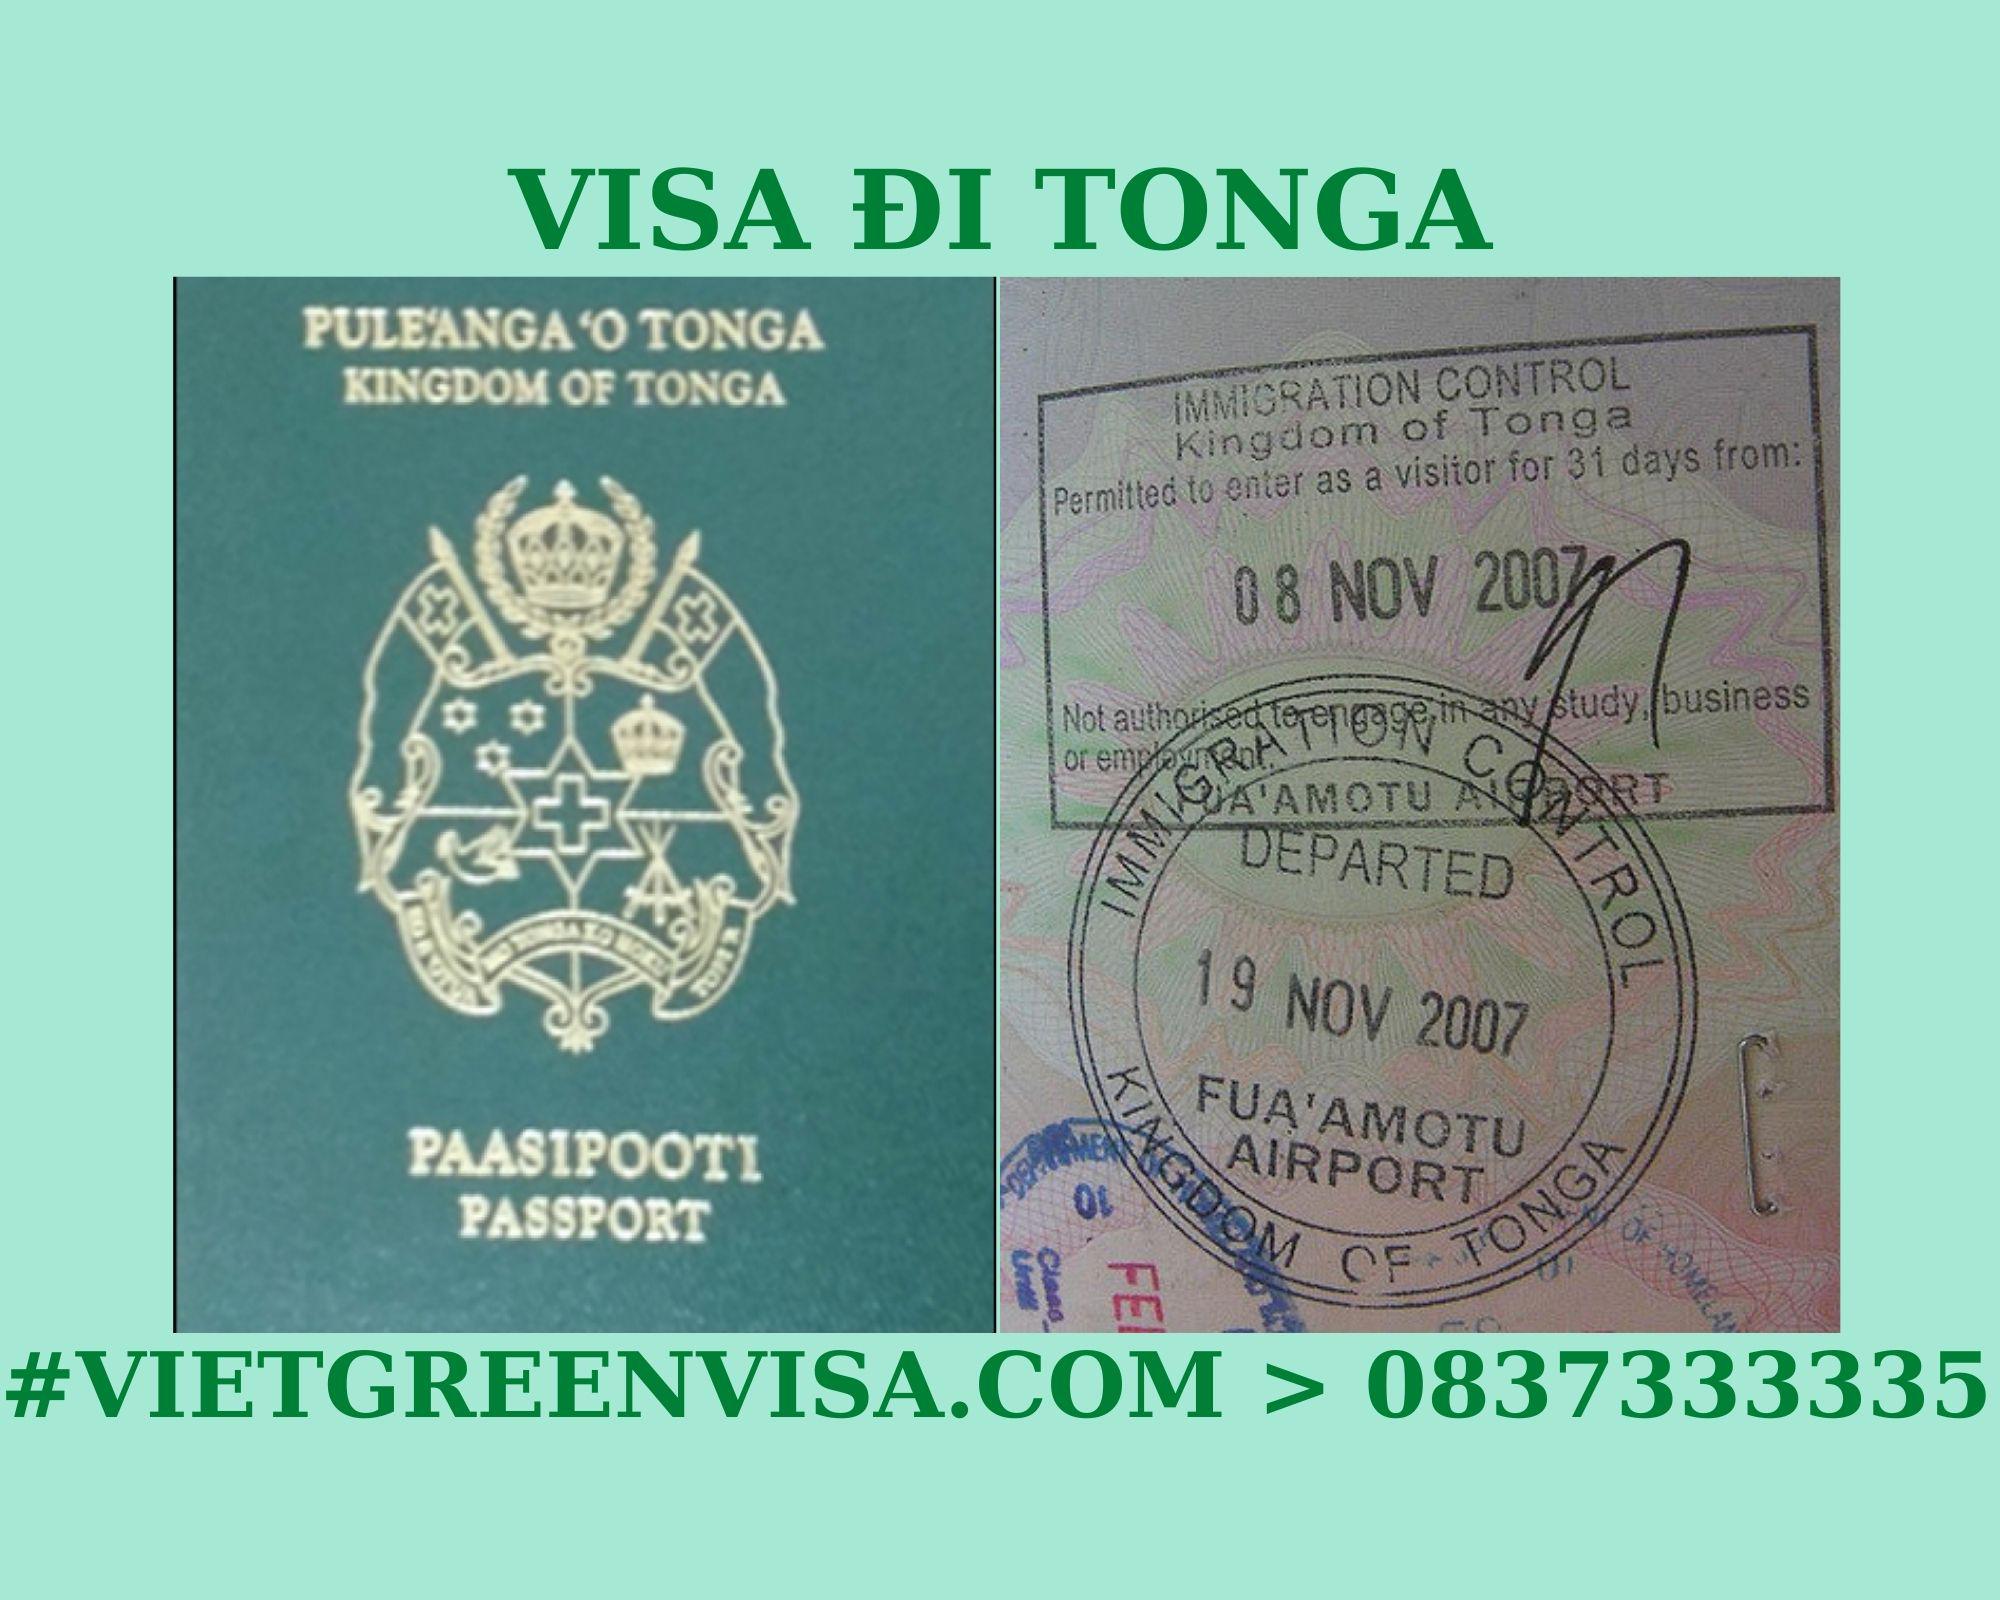 Dịch vụ xin Visa du lịch Tonga uy tín, trọn gói